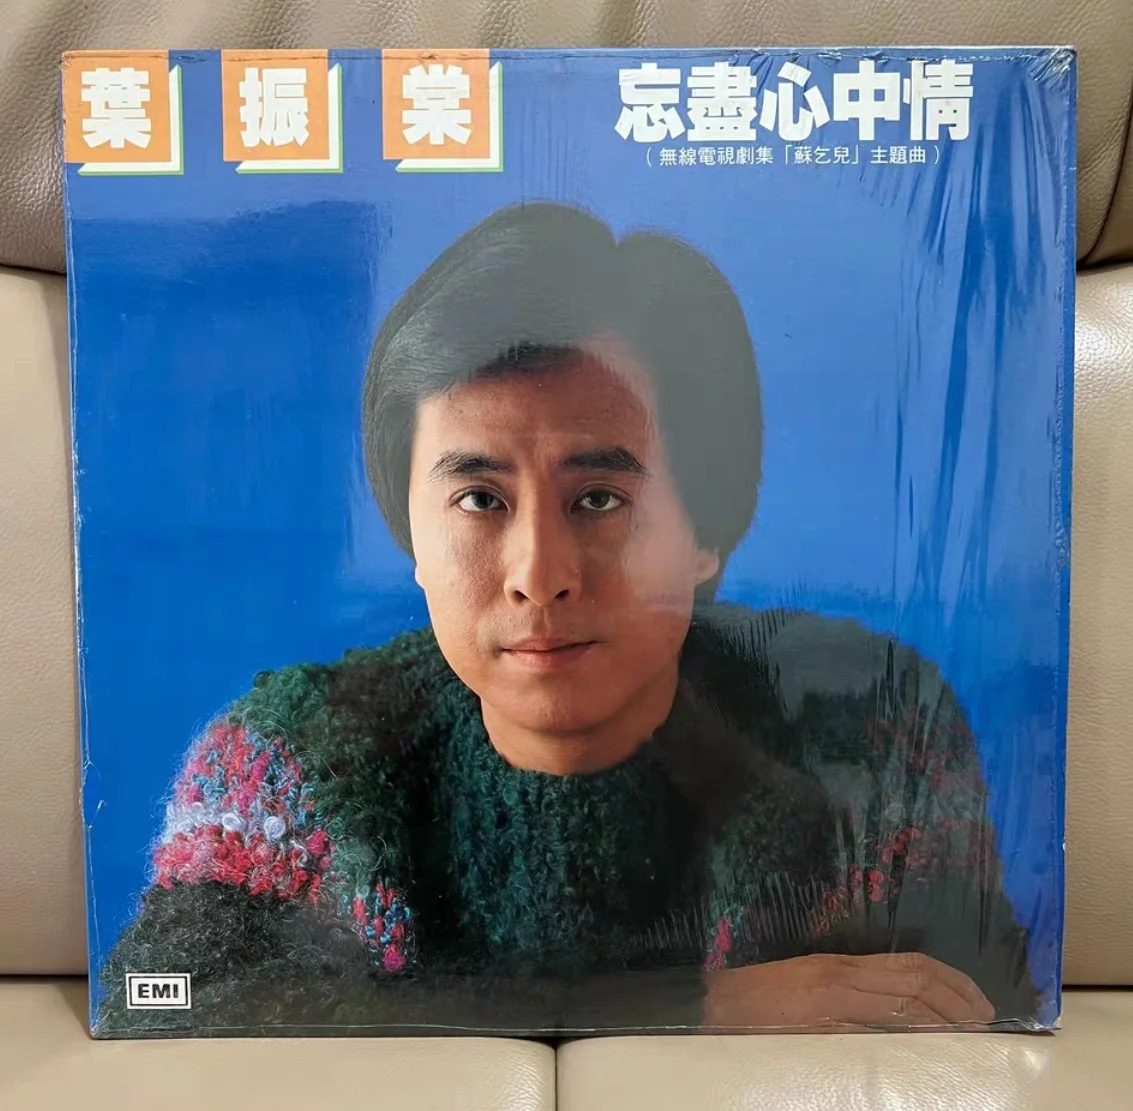 Eski Koleksiyon 33 RPM 12 inç 30 cm 1 Vinil Kayıtları LP Disk Asya Çin Pop Müzik Kanton Erkek Şarkıcı Johnny Yip Klasik Şarkılar